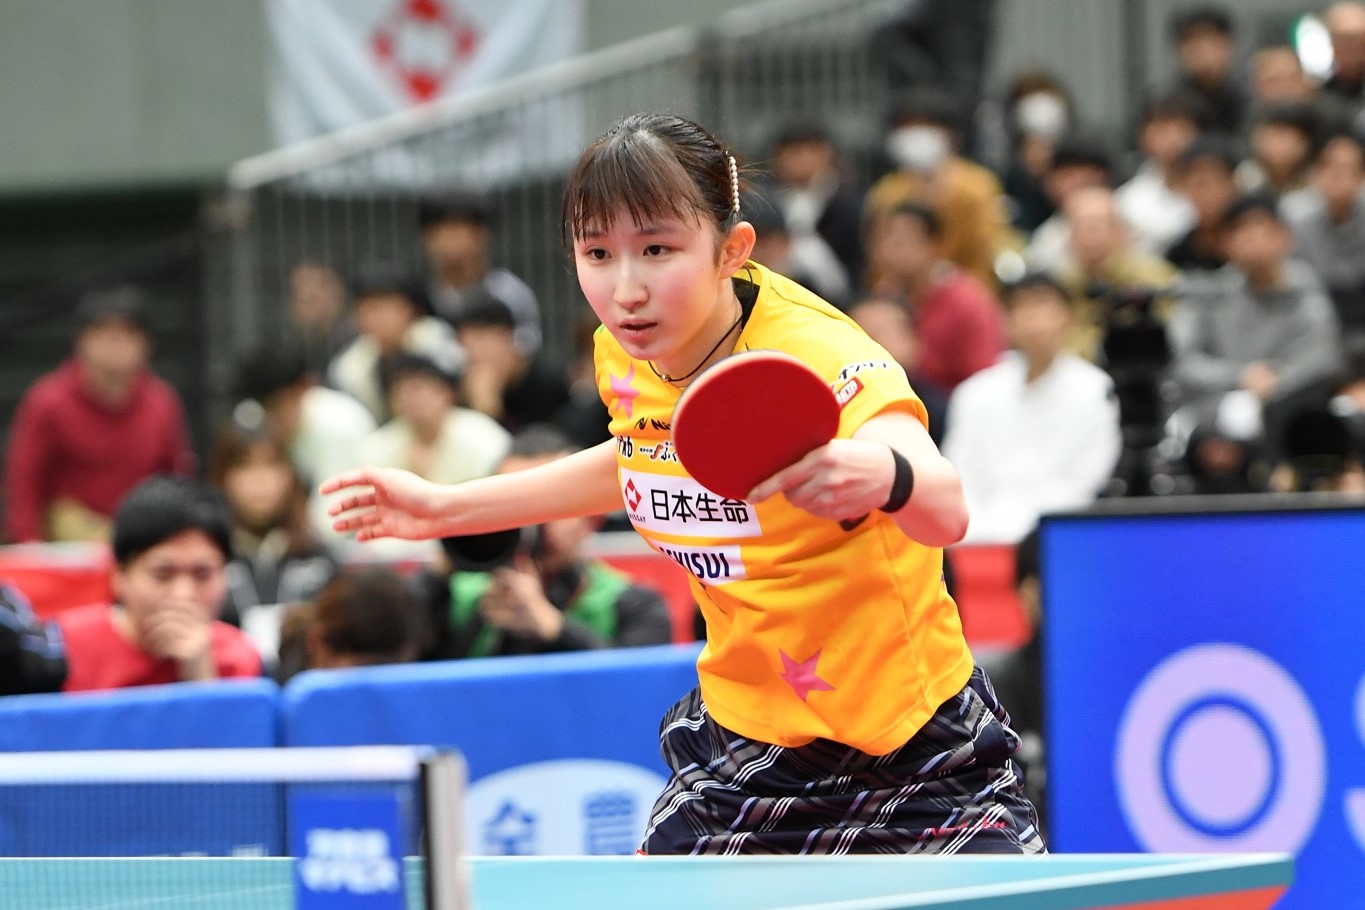 全日本 卓球 選手権 大会 2020